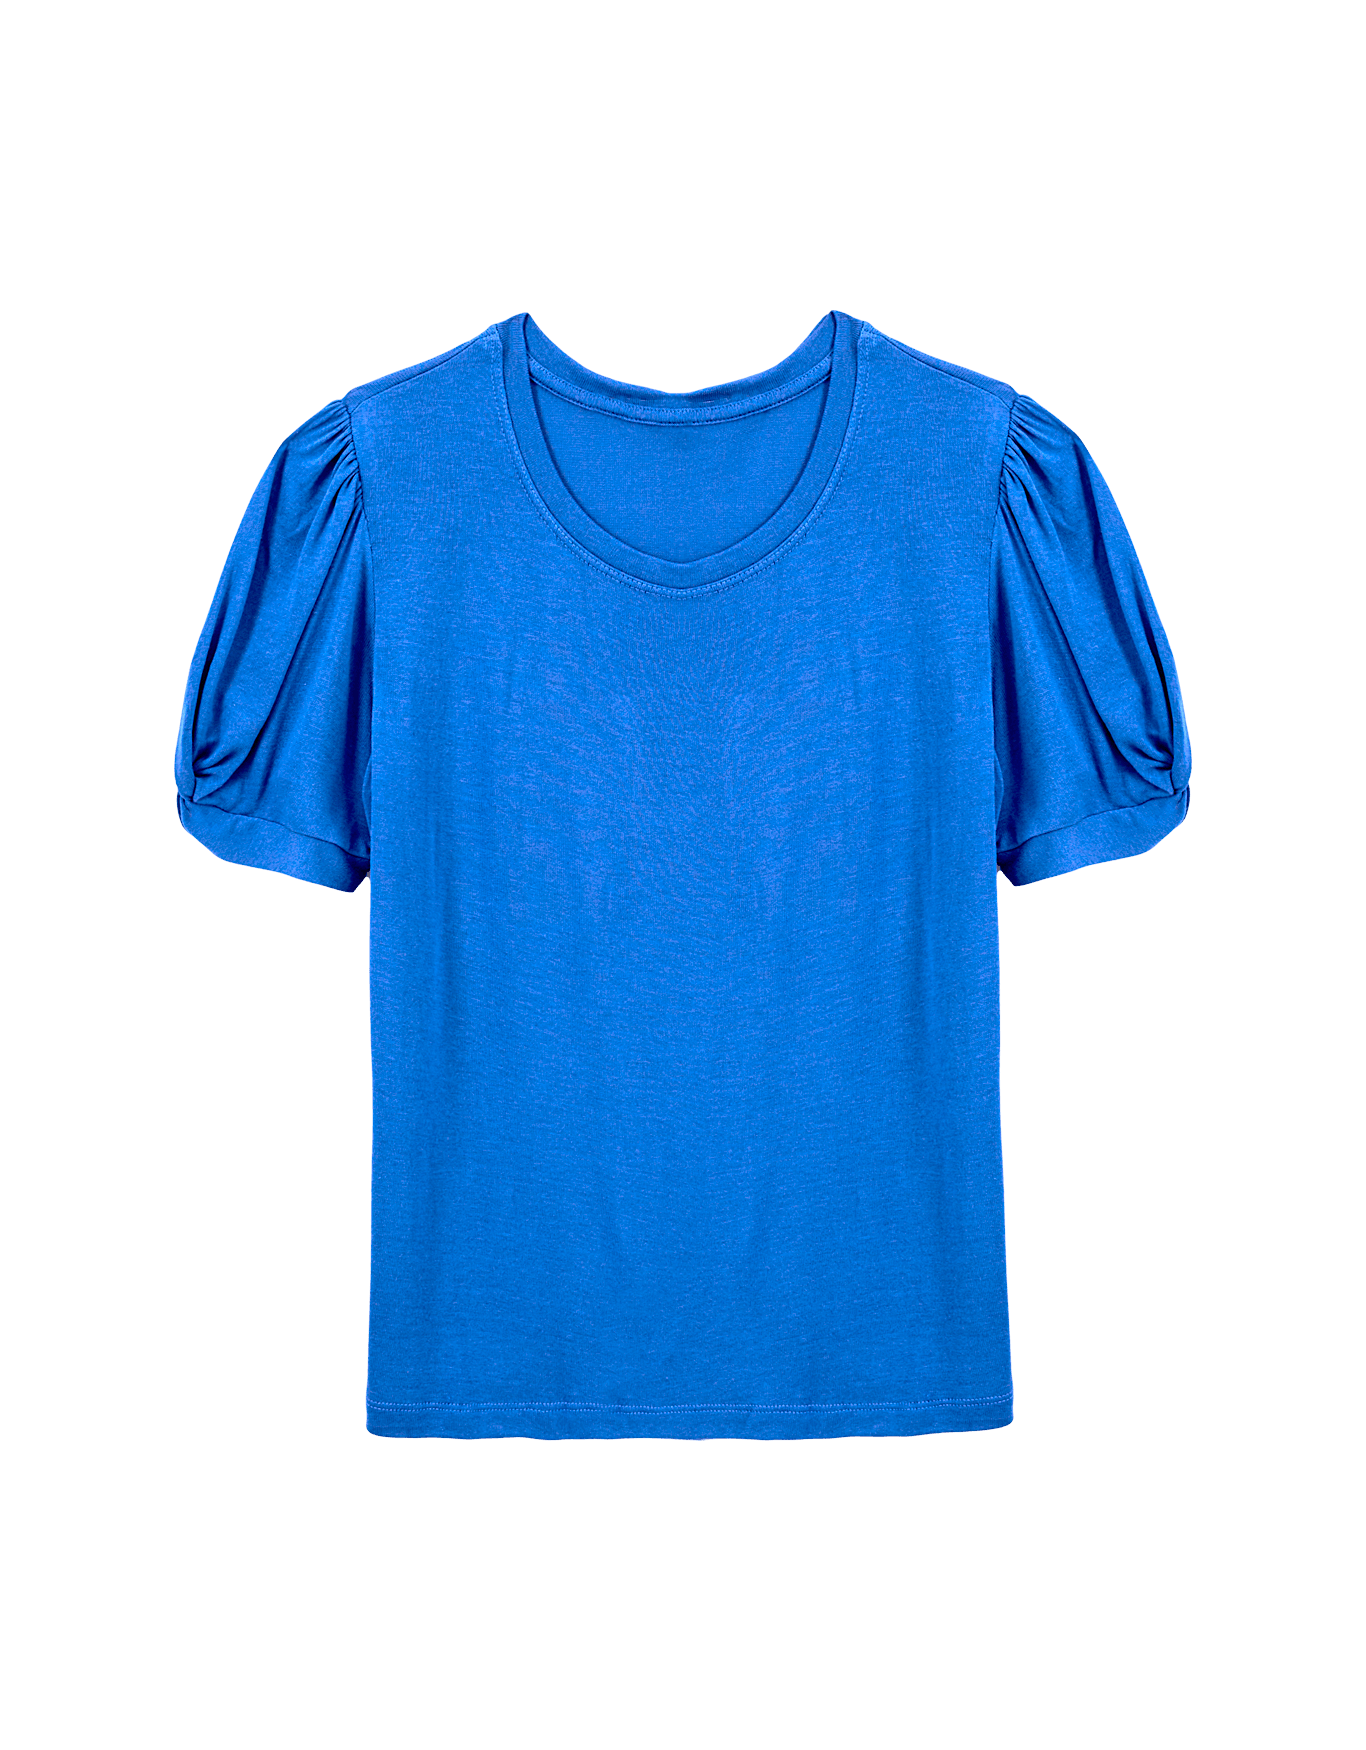 T-shirt manga camisola algodão, t-shirt, camiseta, azul png